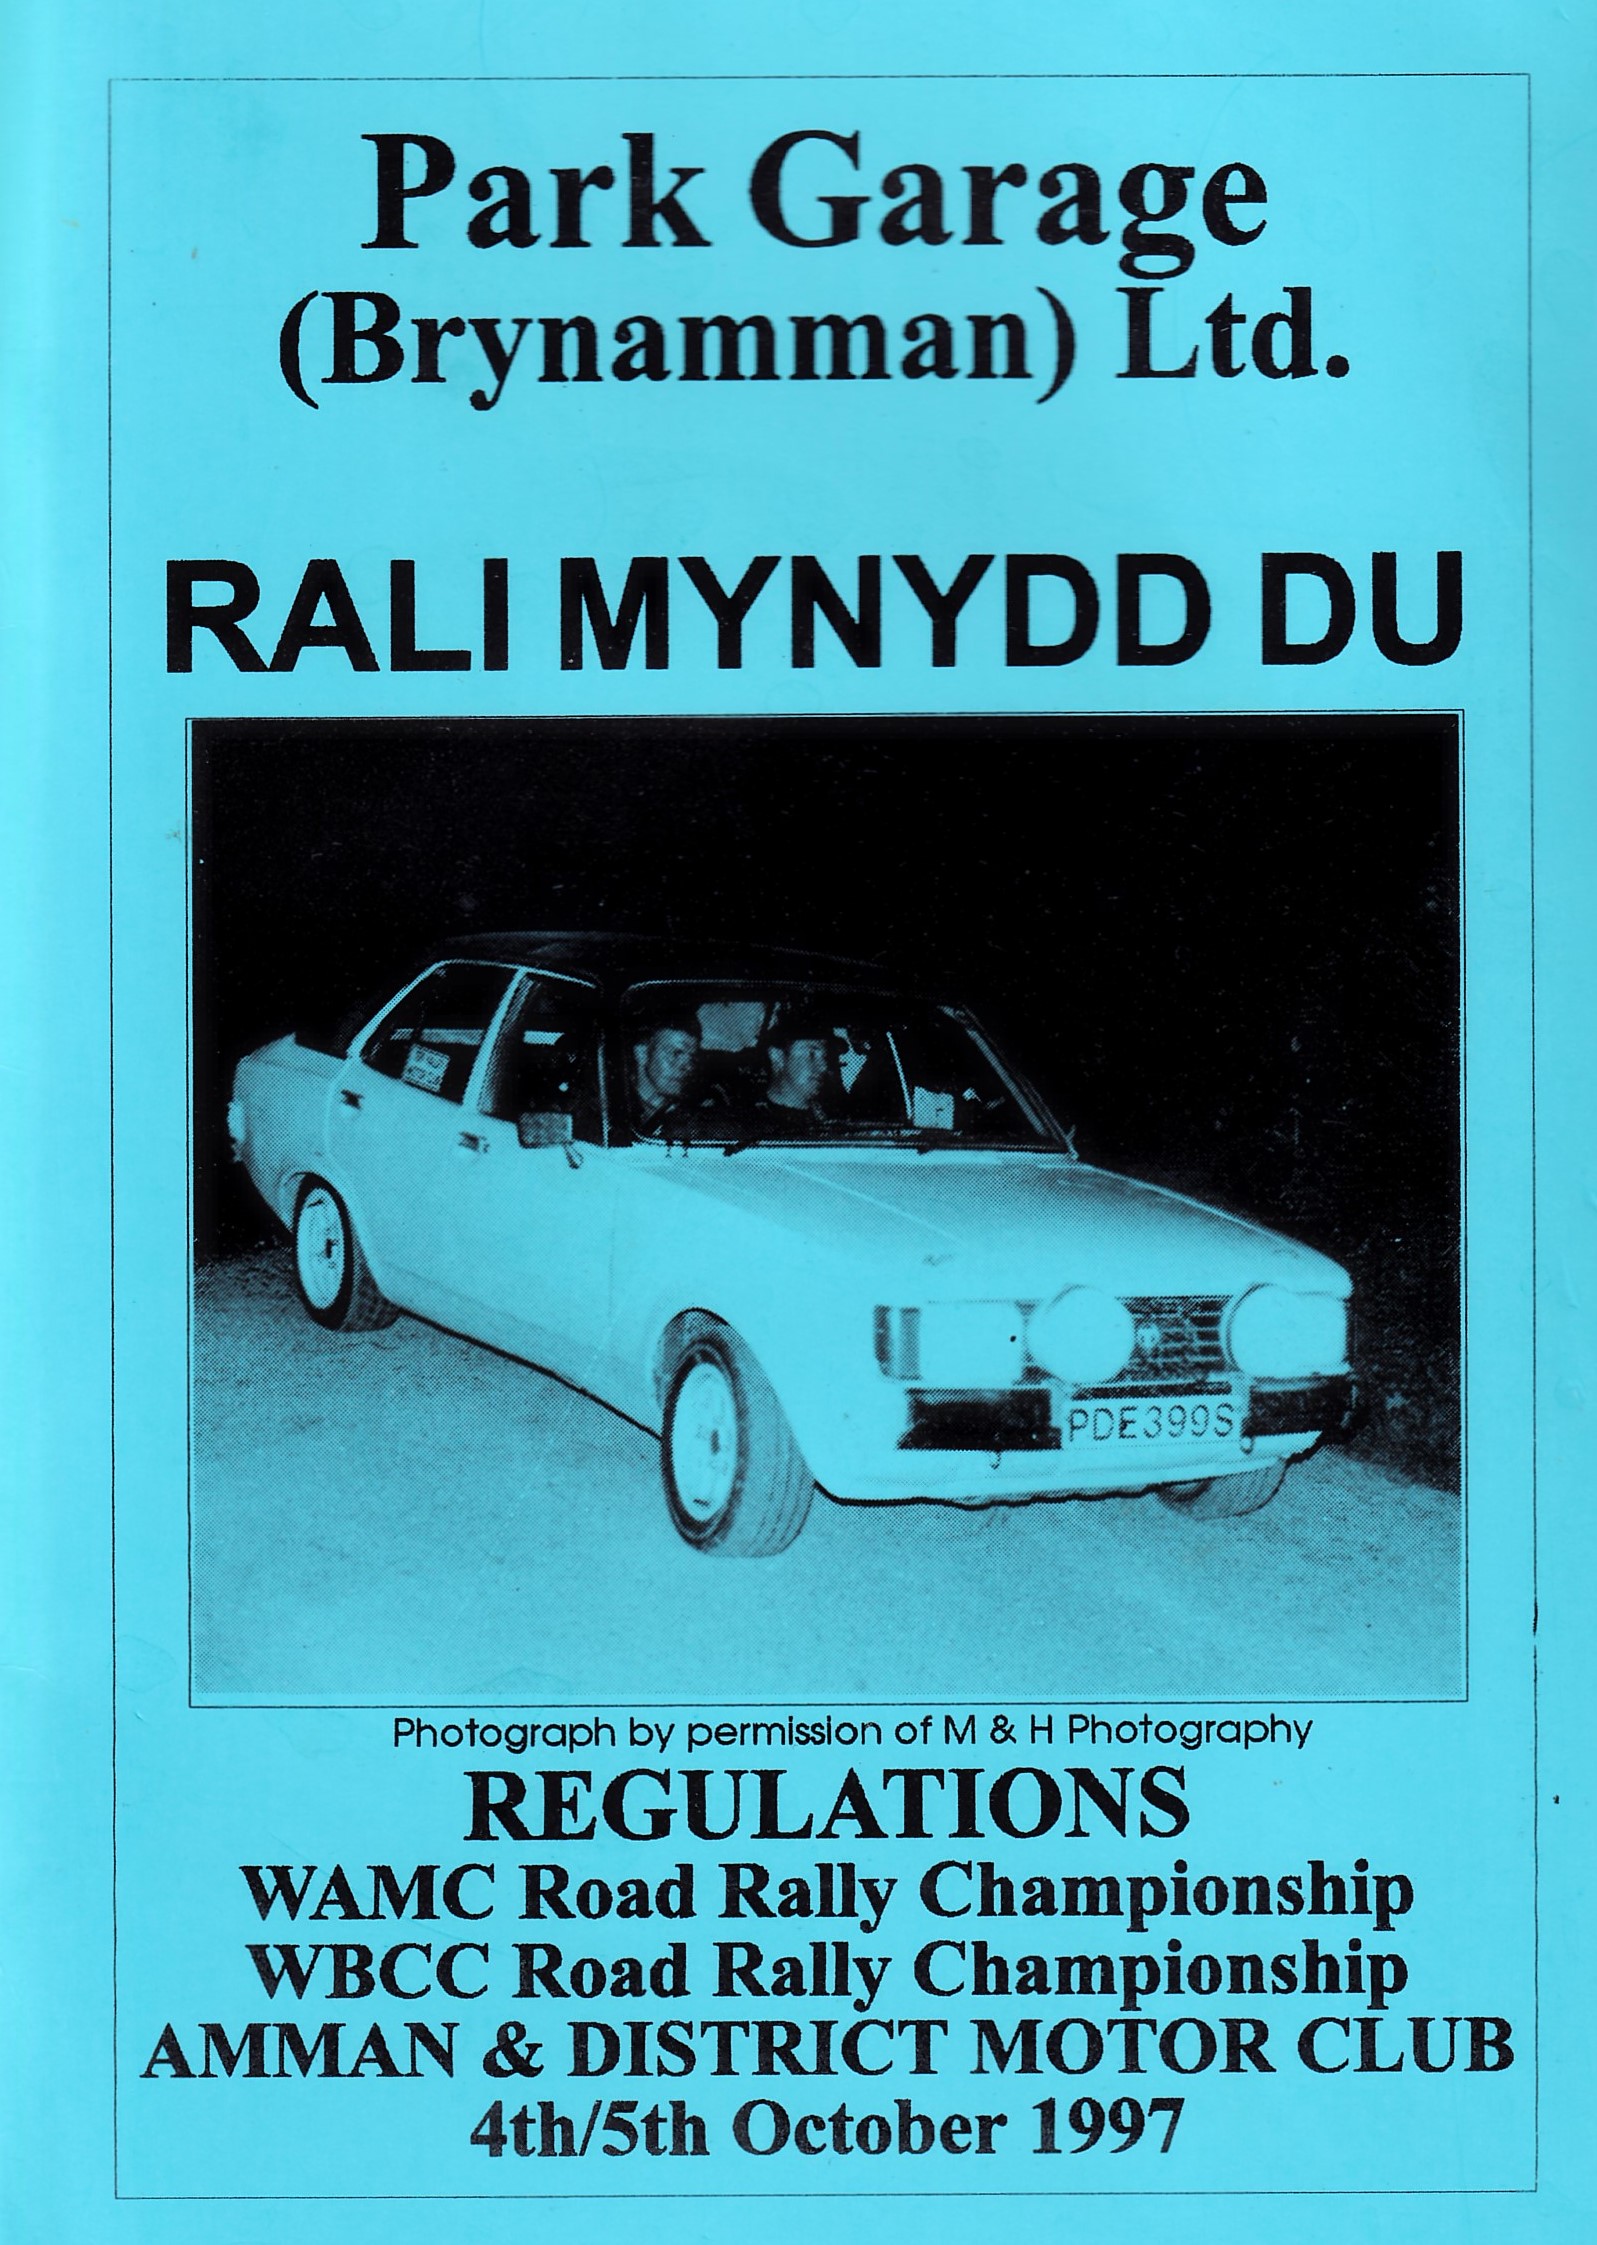 Rali Mynydd Ddu 1997